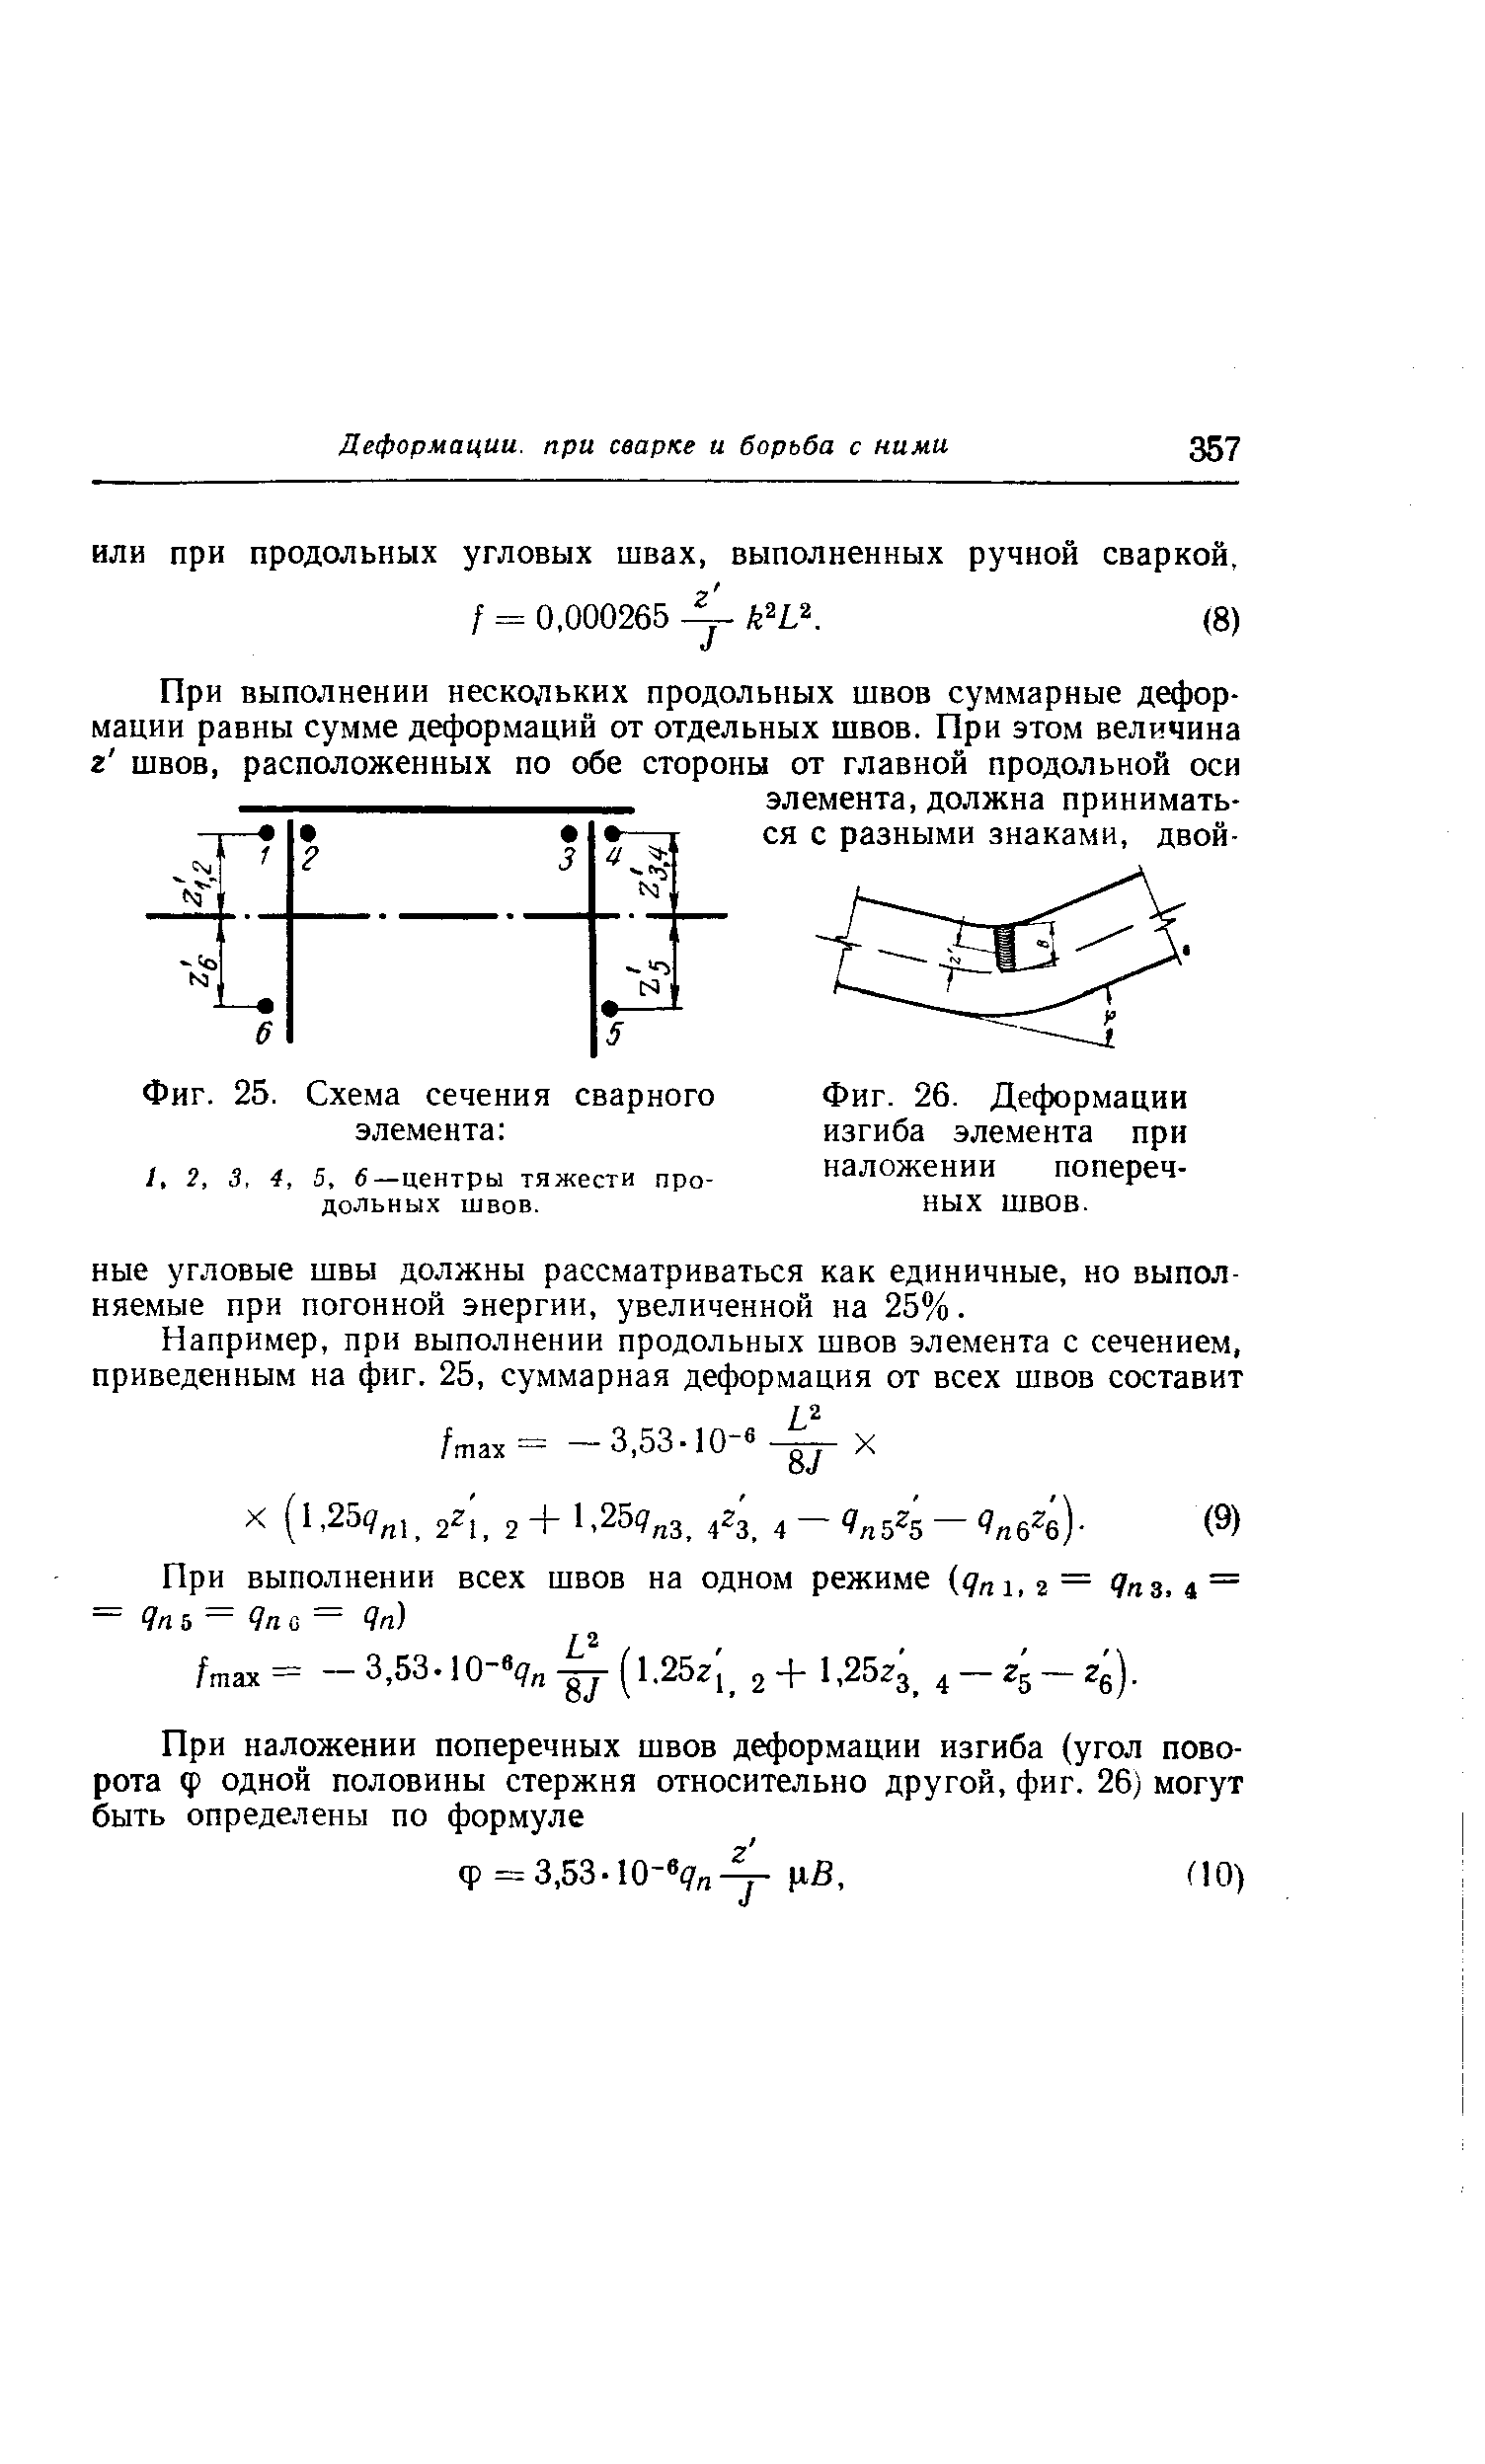 Фиг. 26. Деформации изгиба элемента при наложении поперечных швов.
